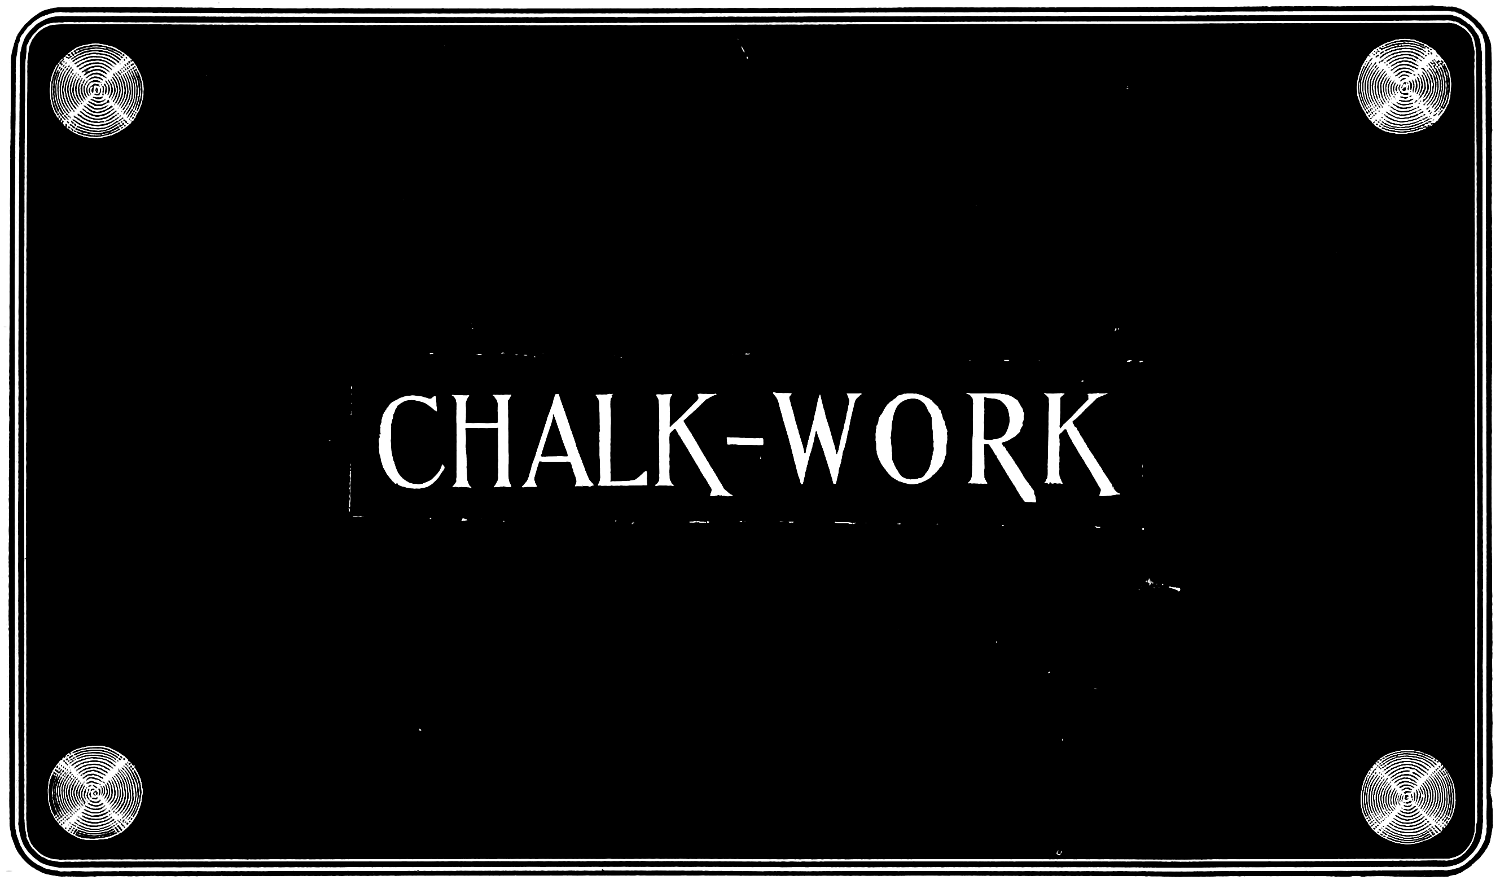 CHALK-WORK